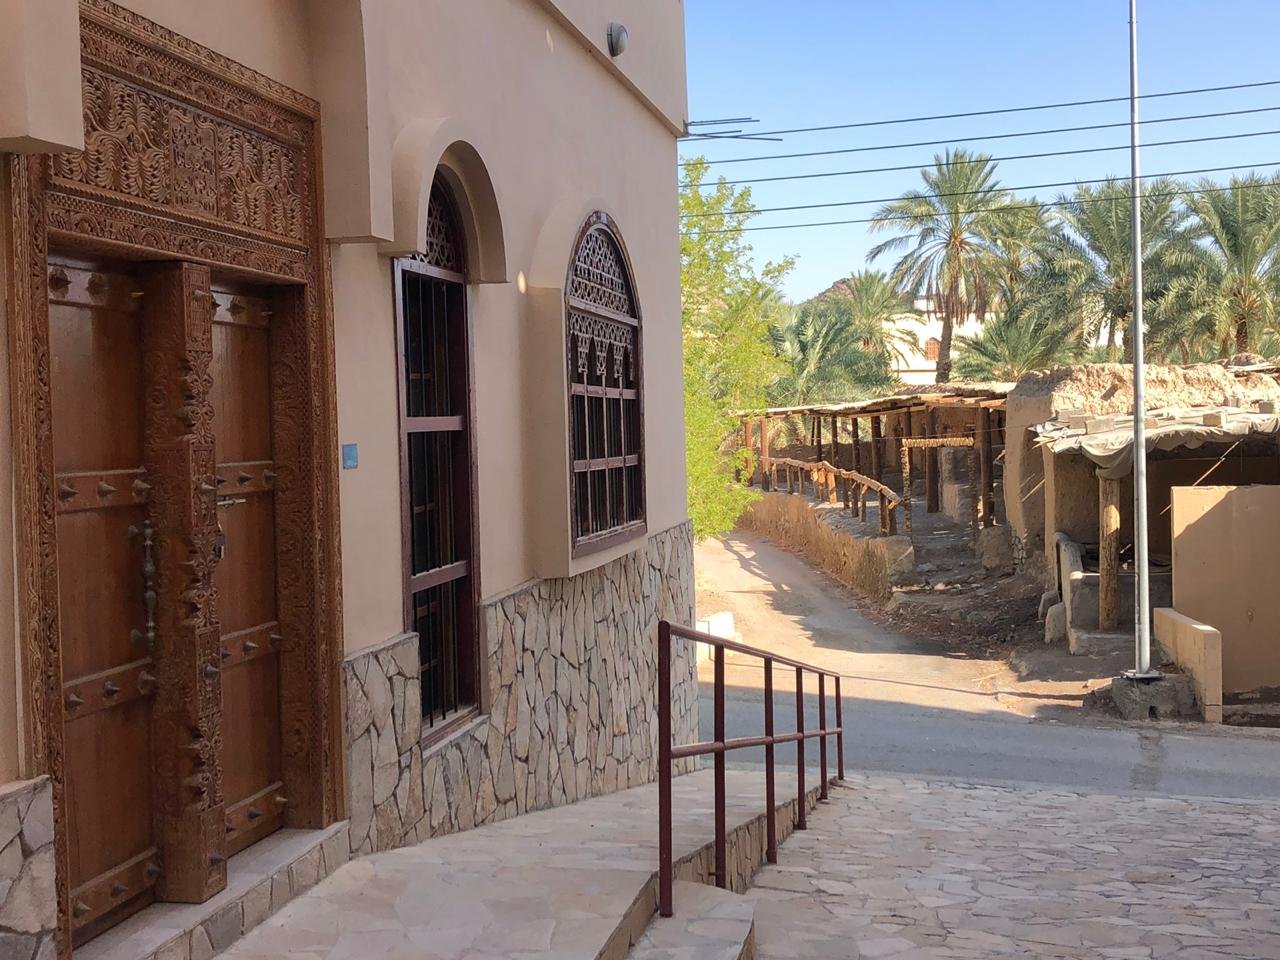 Al Maamari Tours - vecchio villaggio